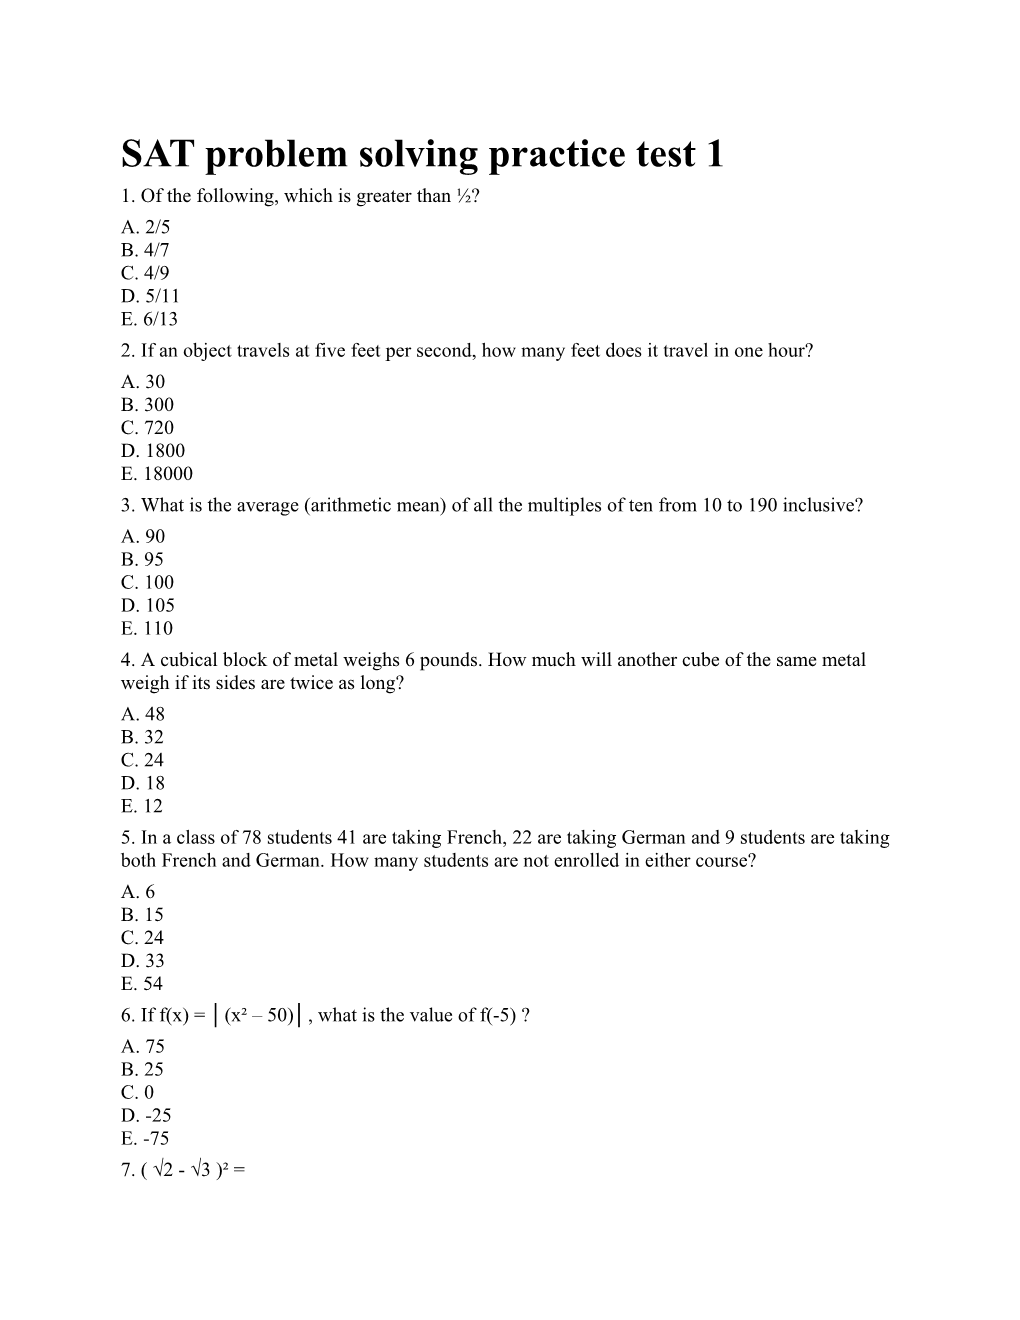 SAT Problem Solving Practice Test 1